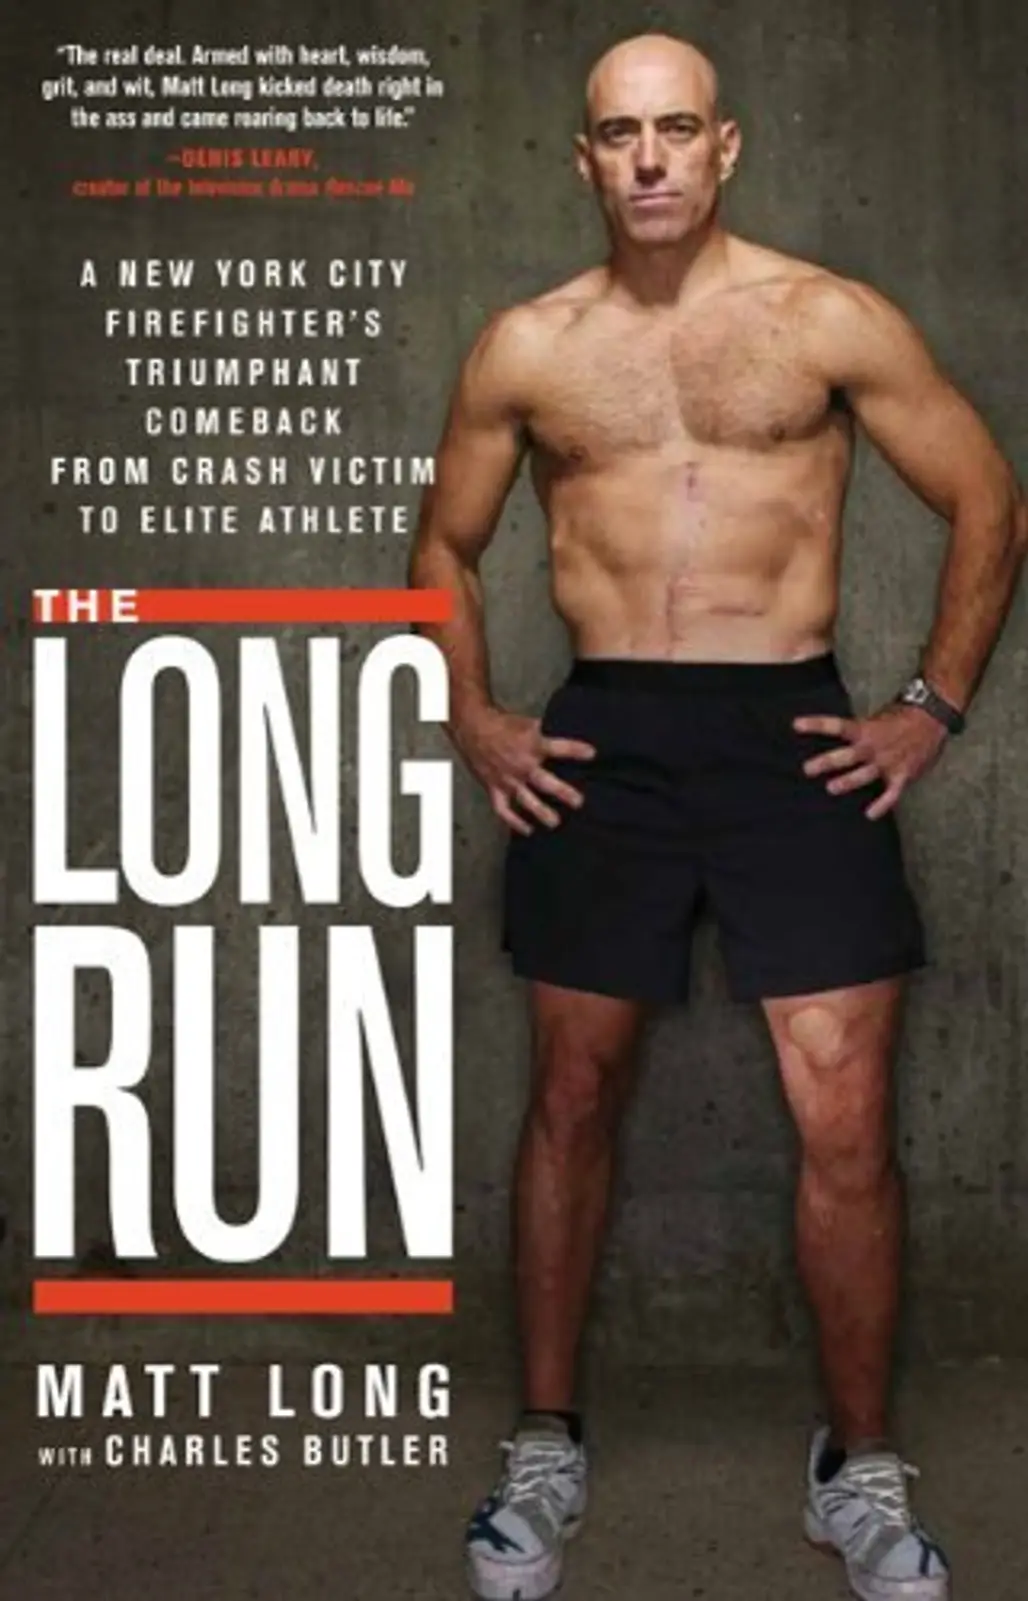 The Long Run by Matt Long